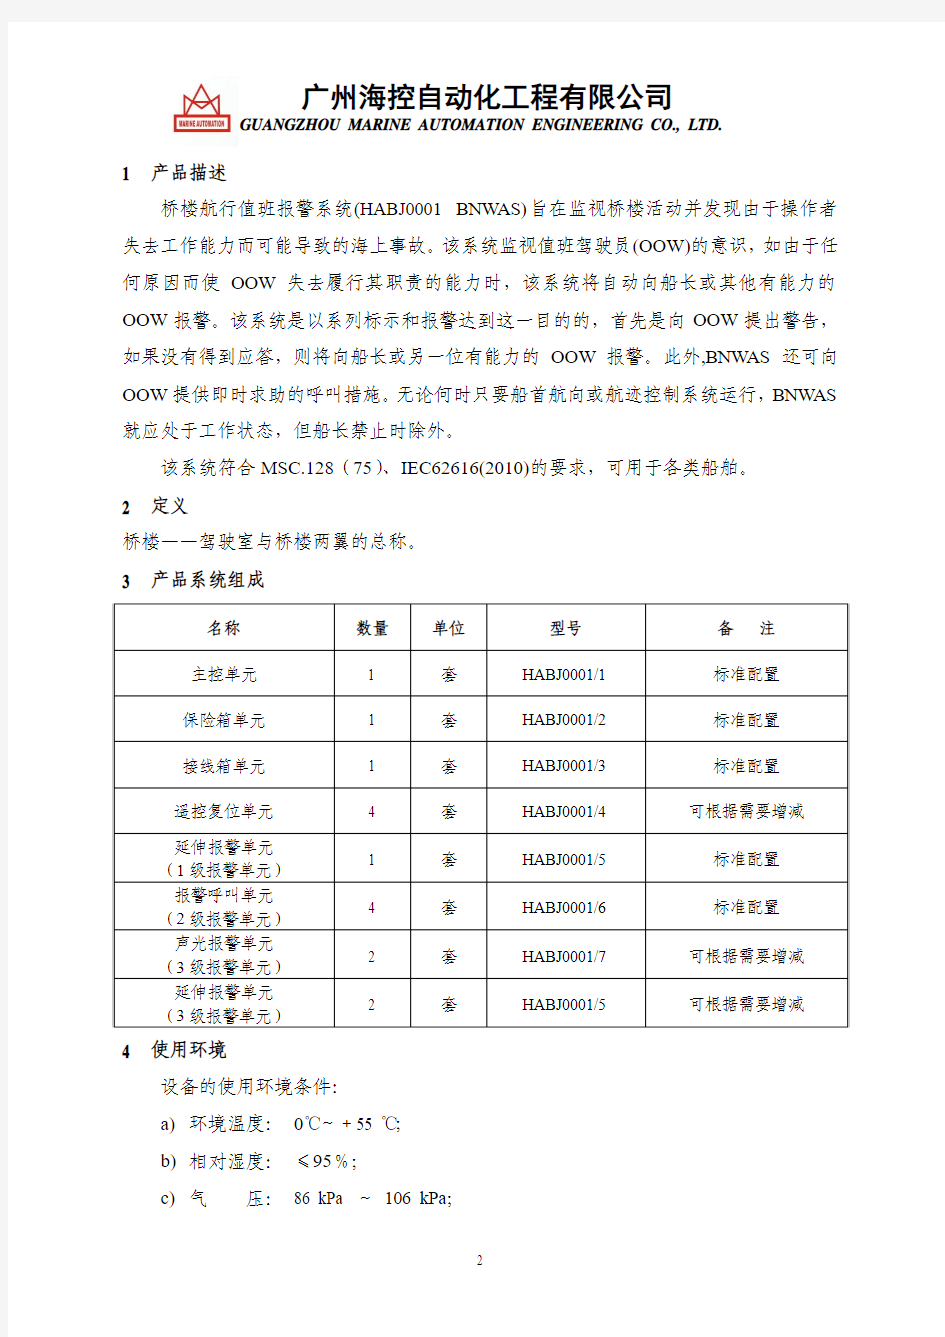 HABJ0001 BNWAS中文说明书(中文定版)